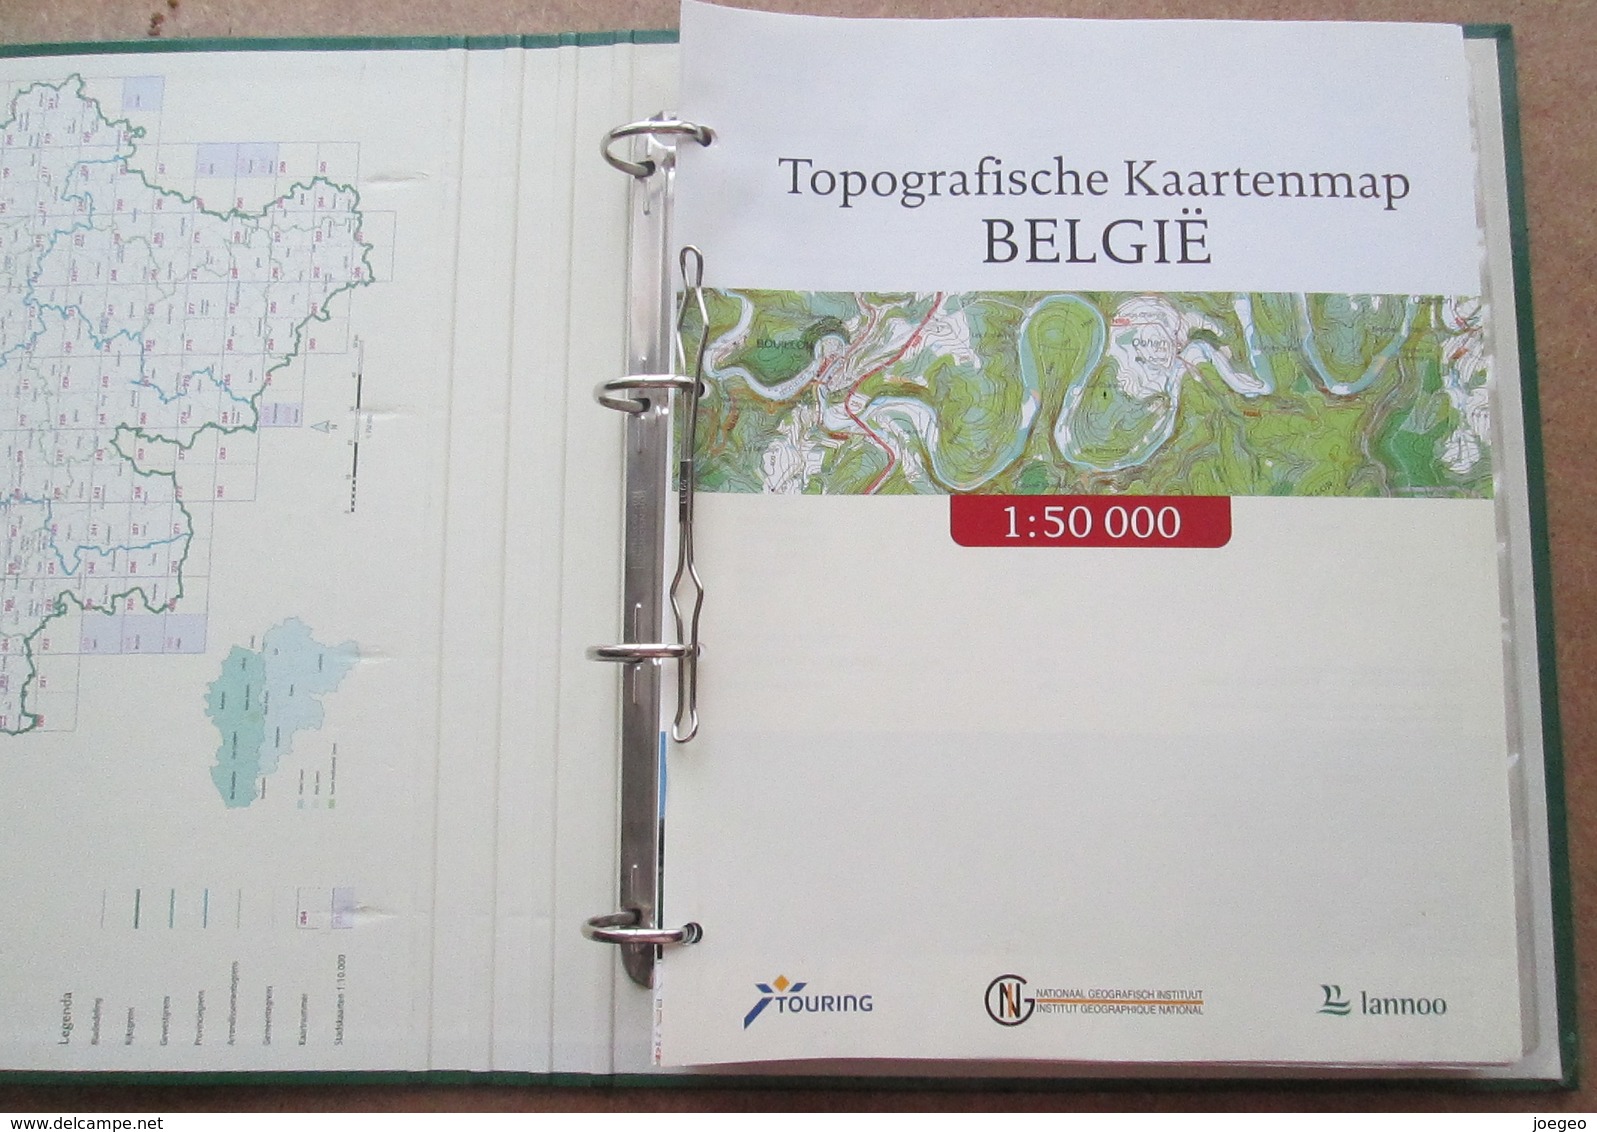 Topografische Kaartenmap België Met 1500 Toeristische Uitstapideeën / Touring Lannoo - Sachbücher